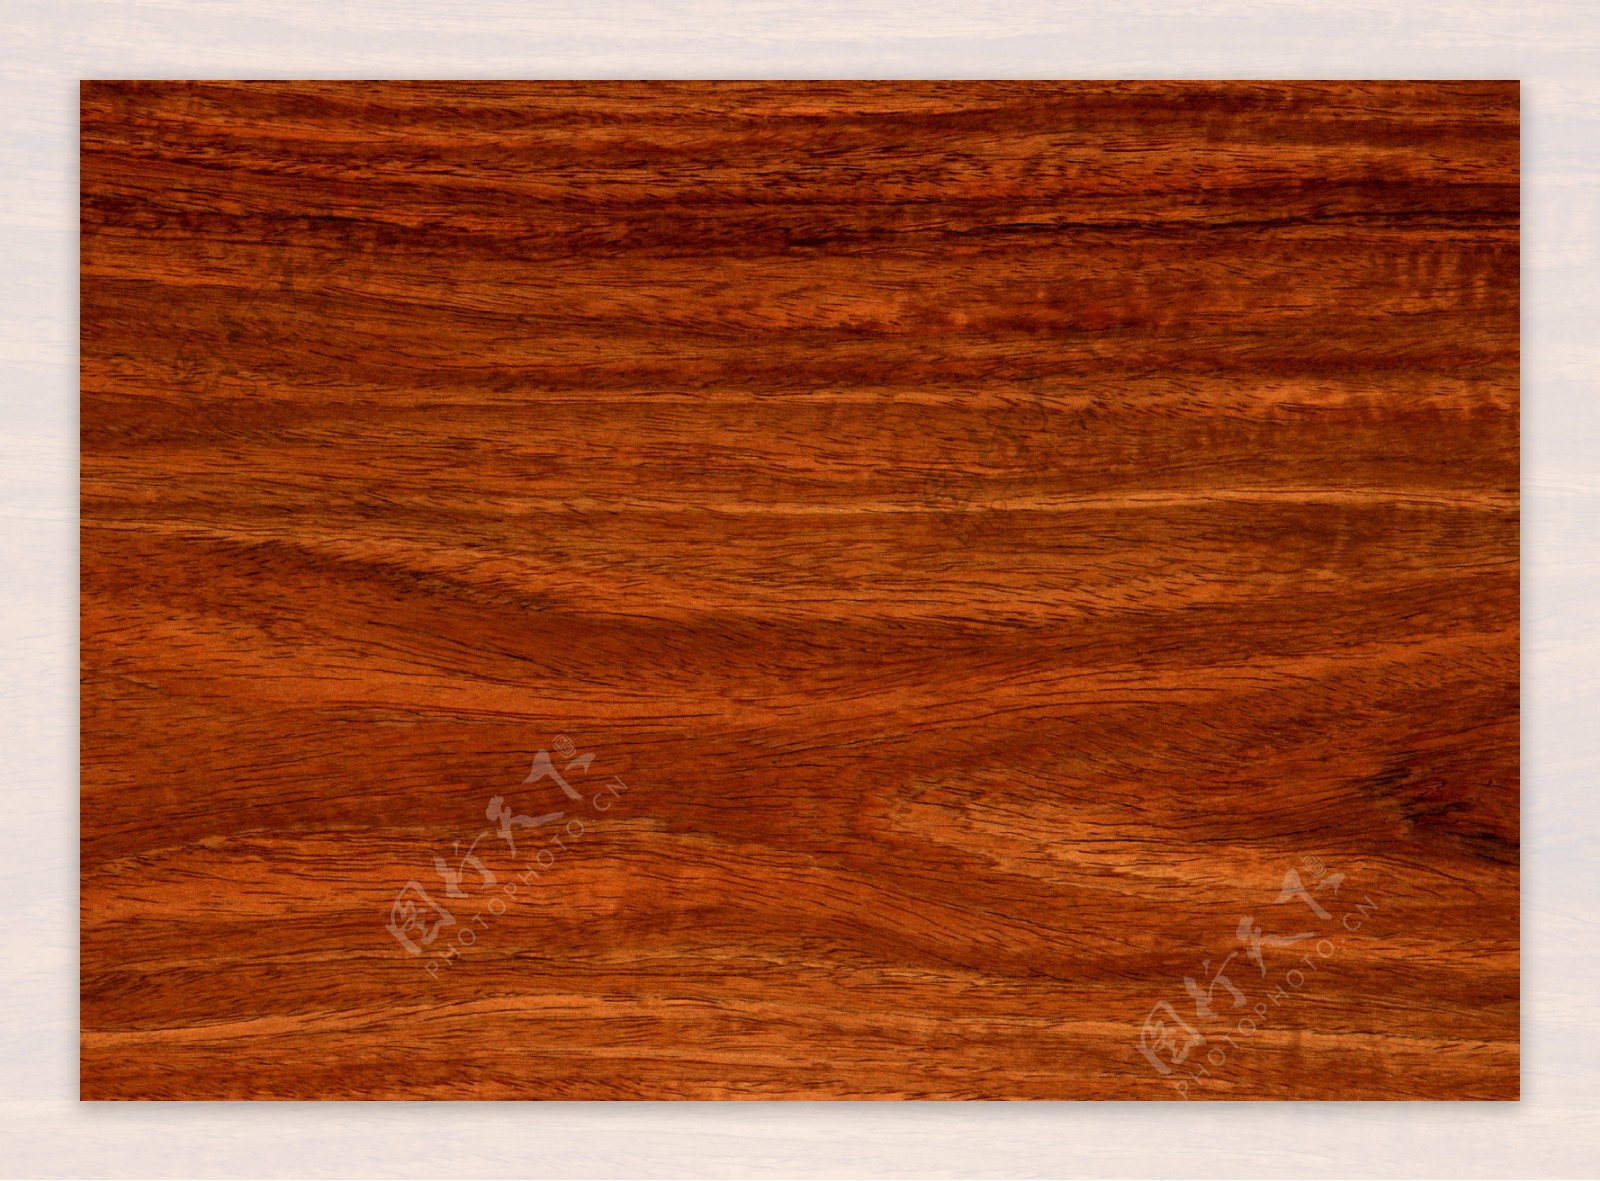 深棕色高清木纹材质贴图